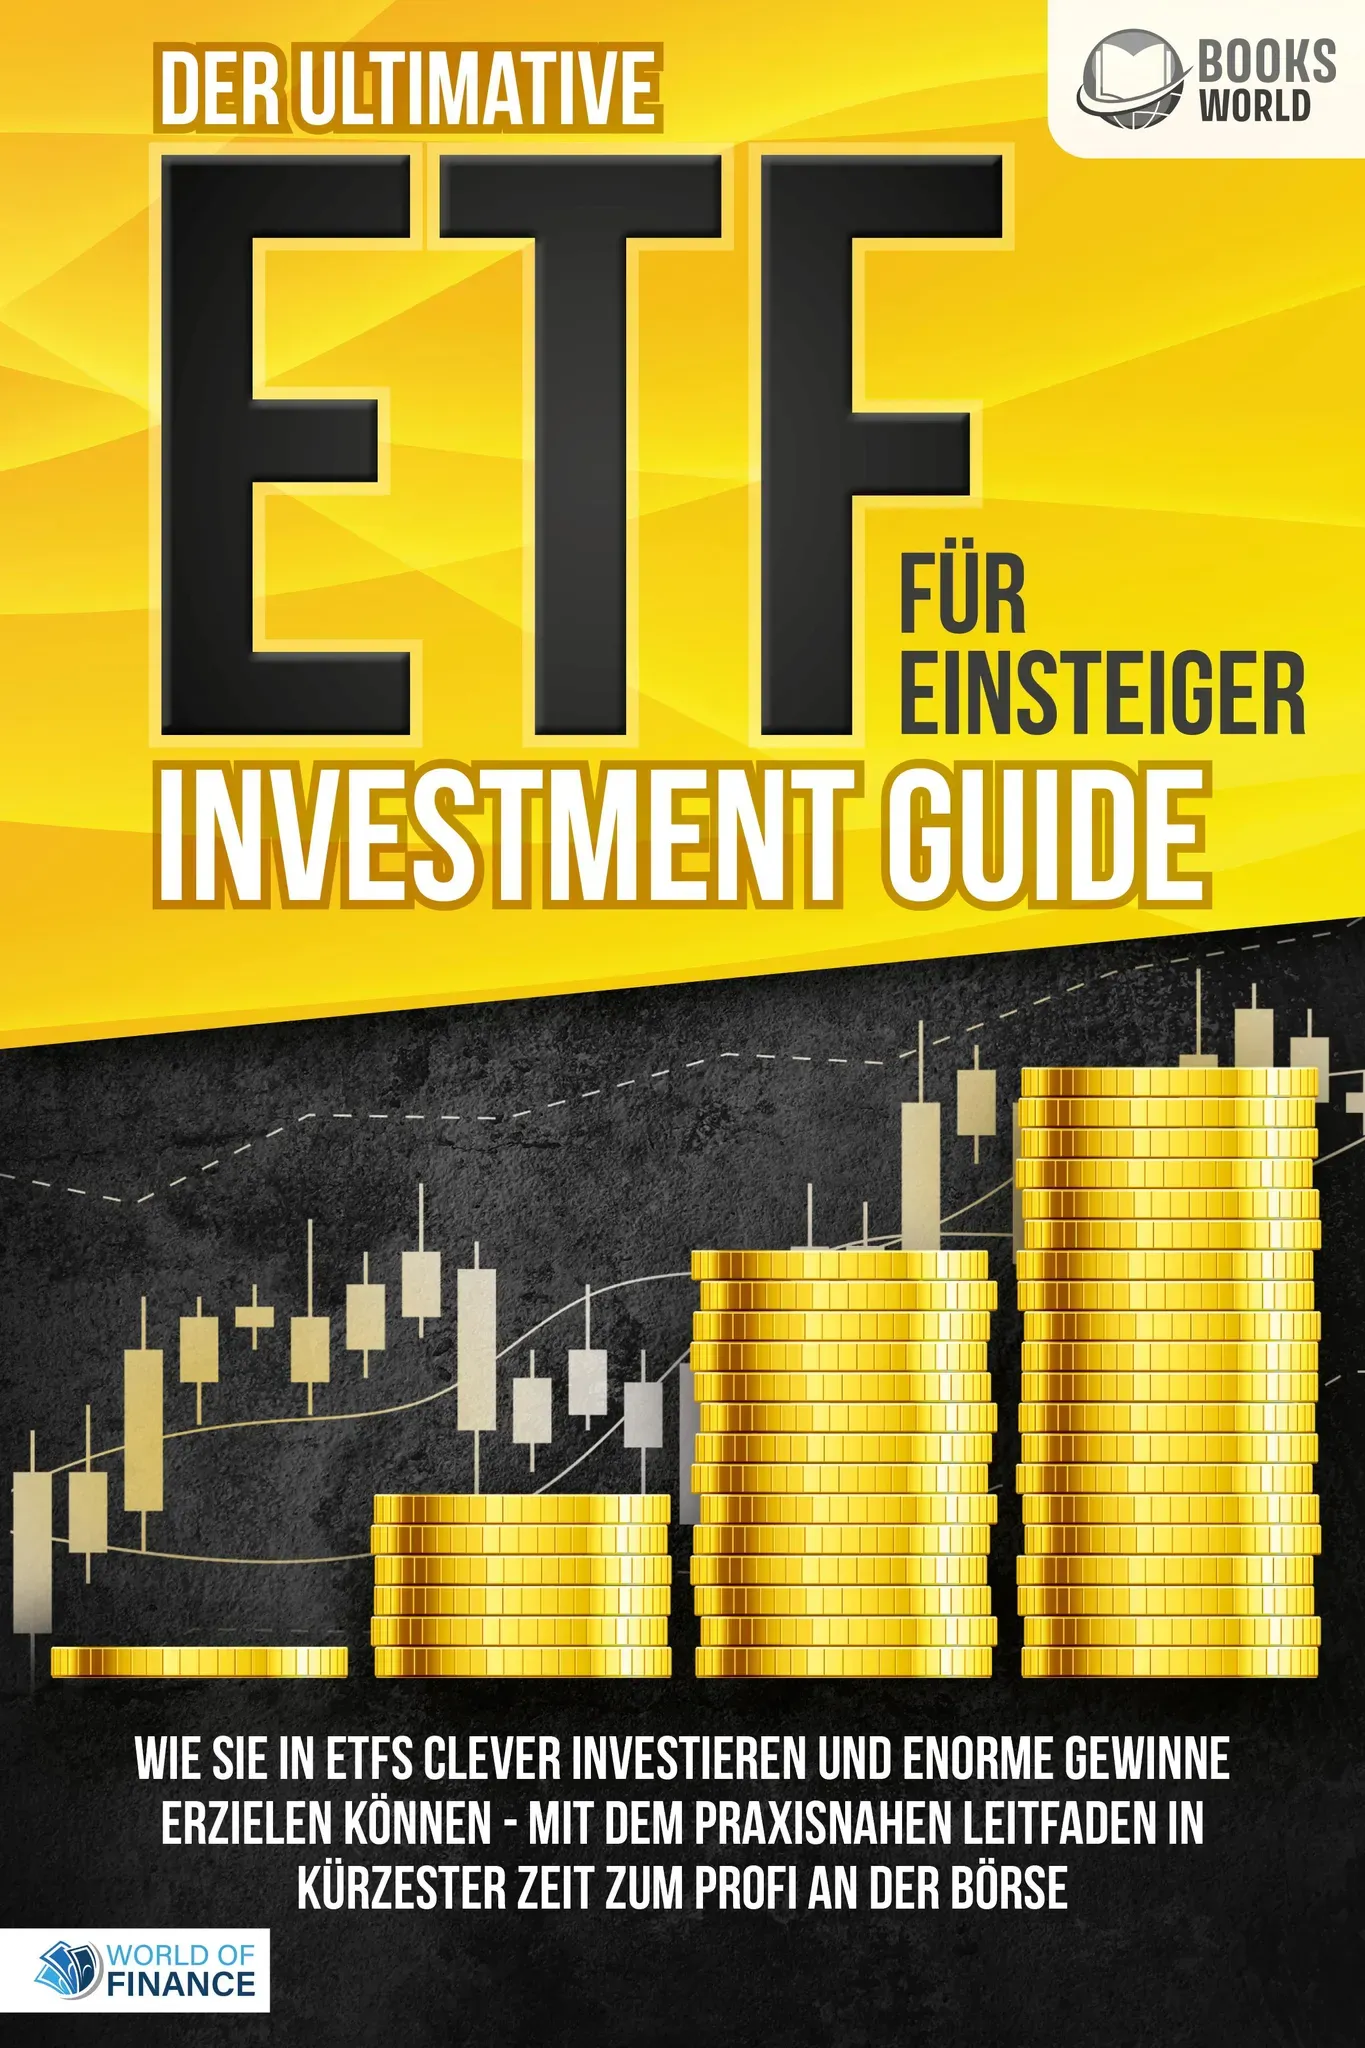 Der ultimative ETF FÜR EINSTEIGER Investment Guide: Wie Sie in ETFs clever investieren und enor, Ratgeber von World of Finance